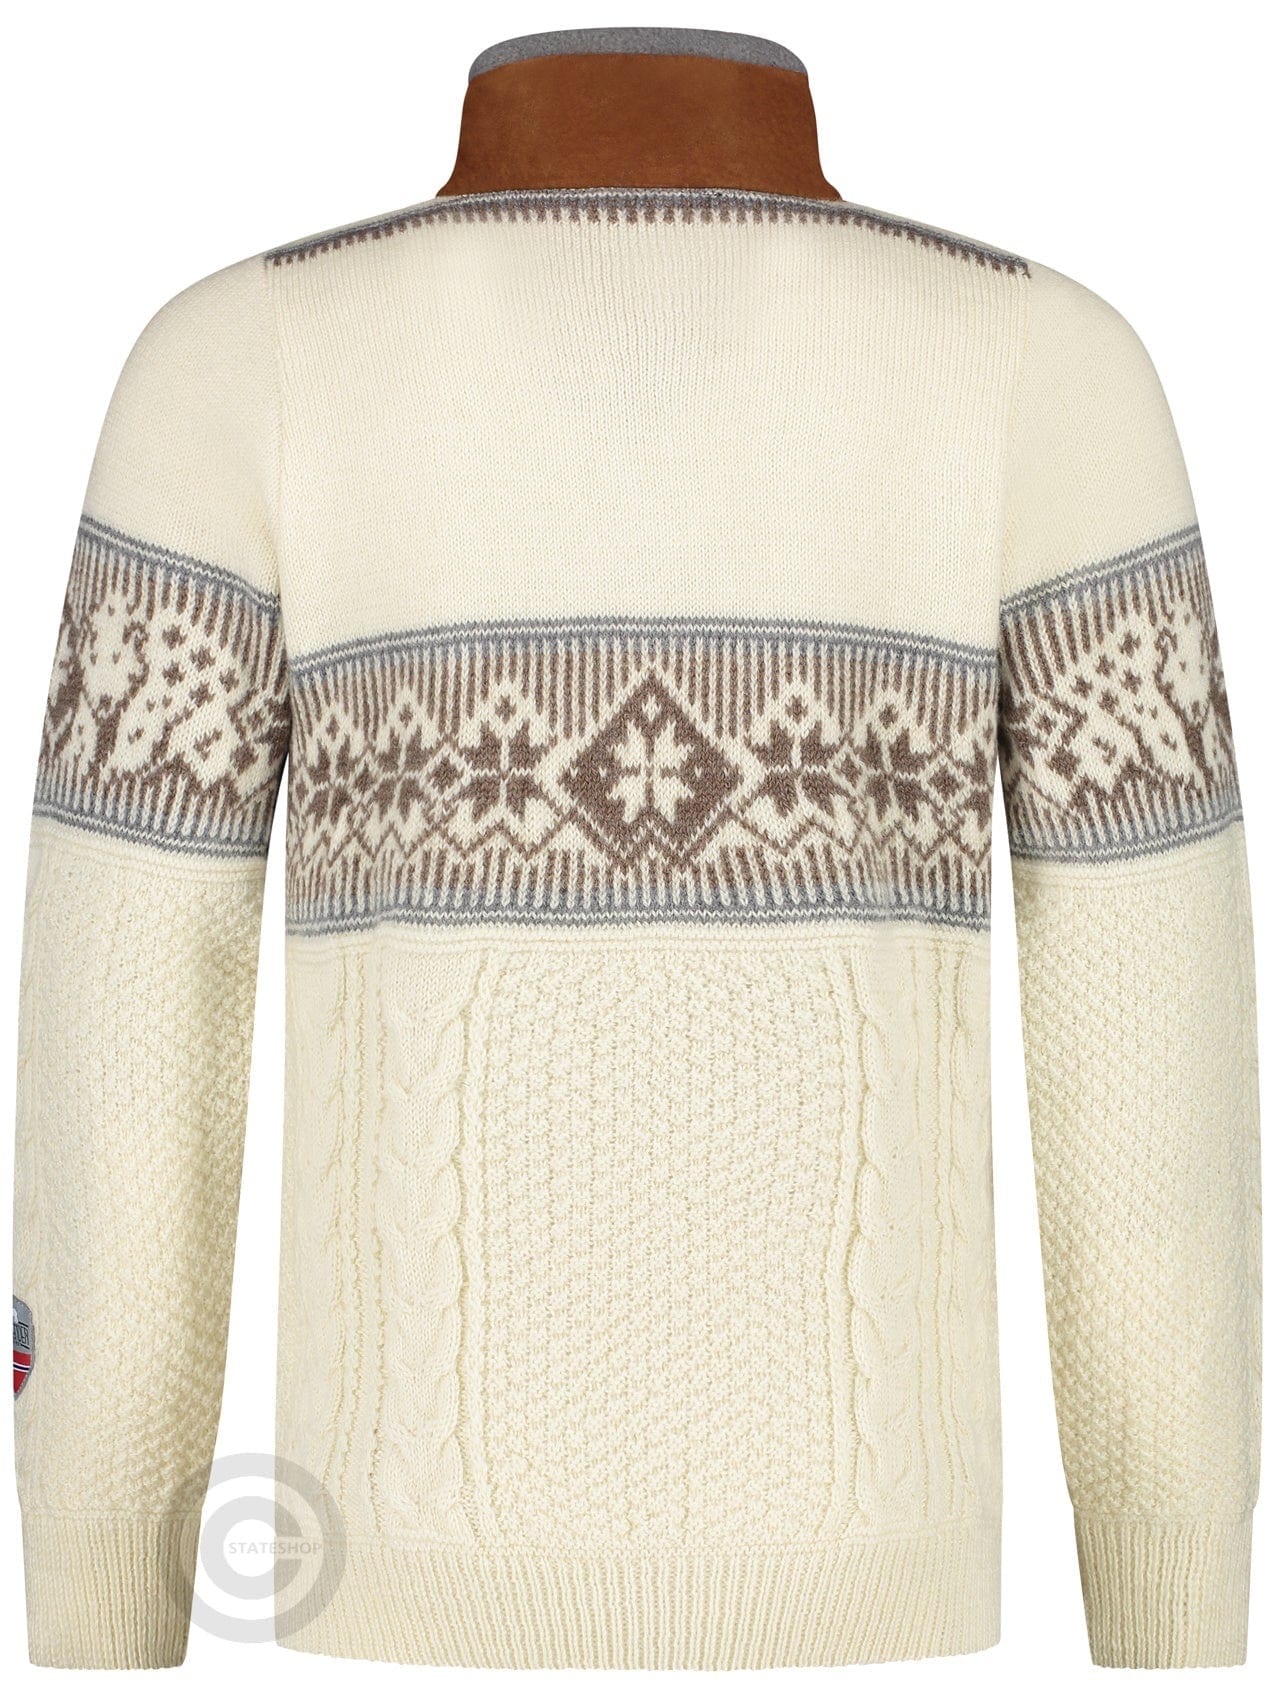 NorfindeNordic Polar Sweater, off-White